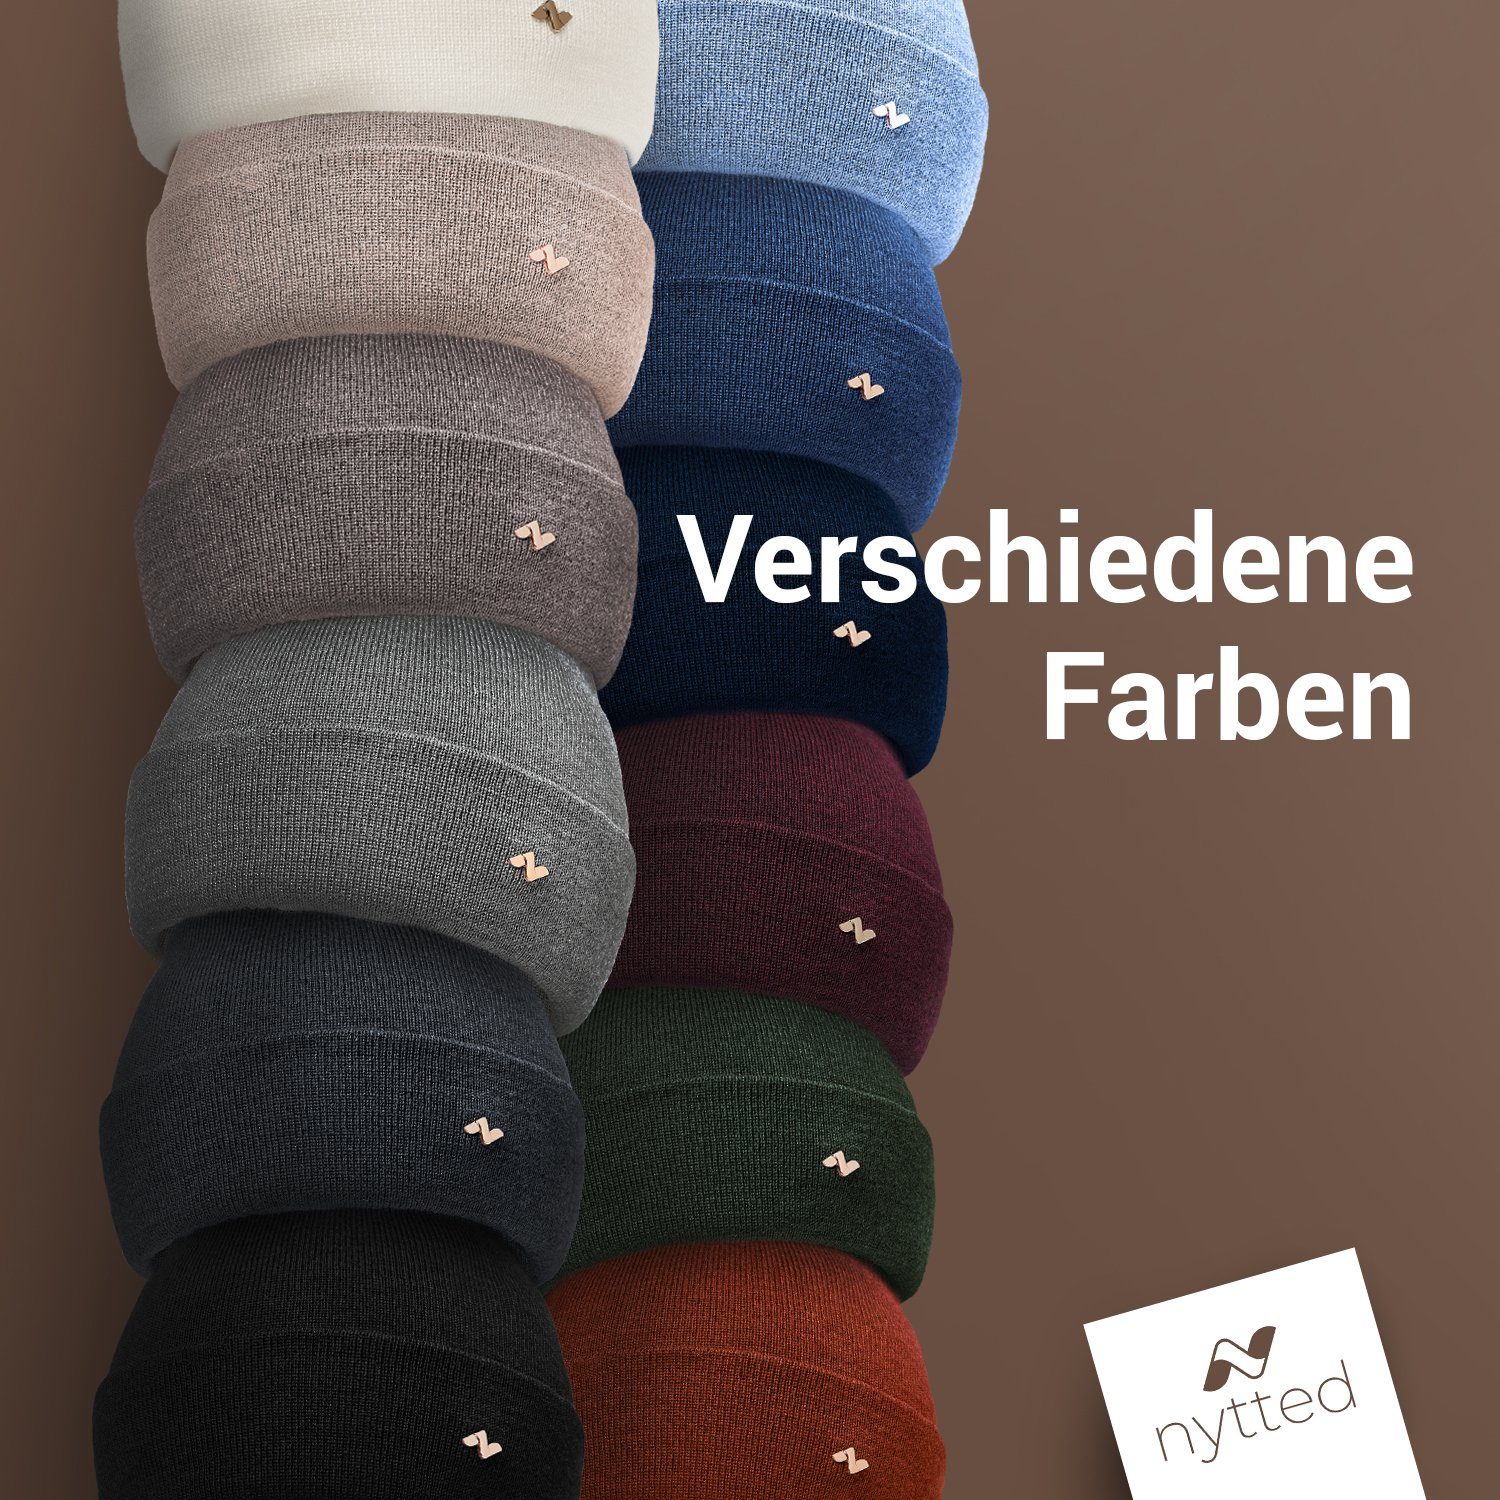 & - Merino-Wolle - Germany Herren NYTTED® Made für 100% - oliv Damen Beanie in Wintermütze